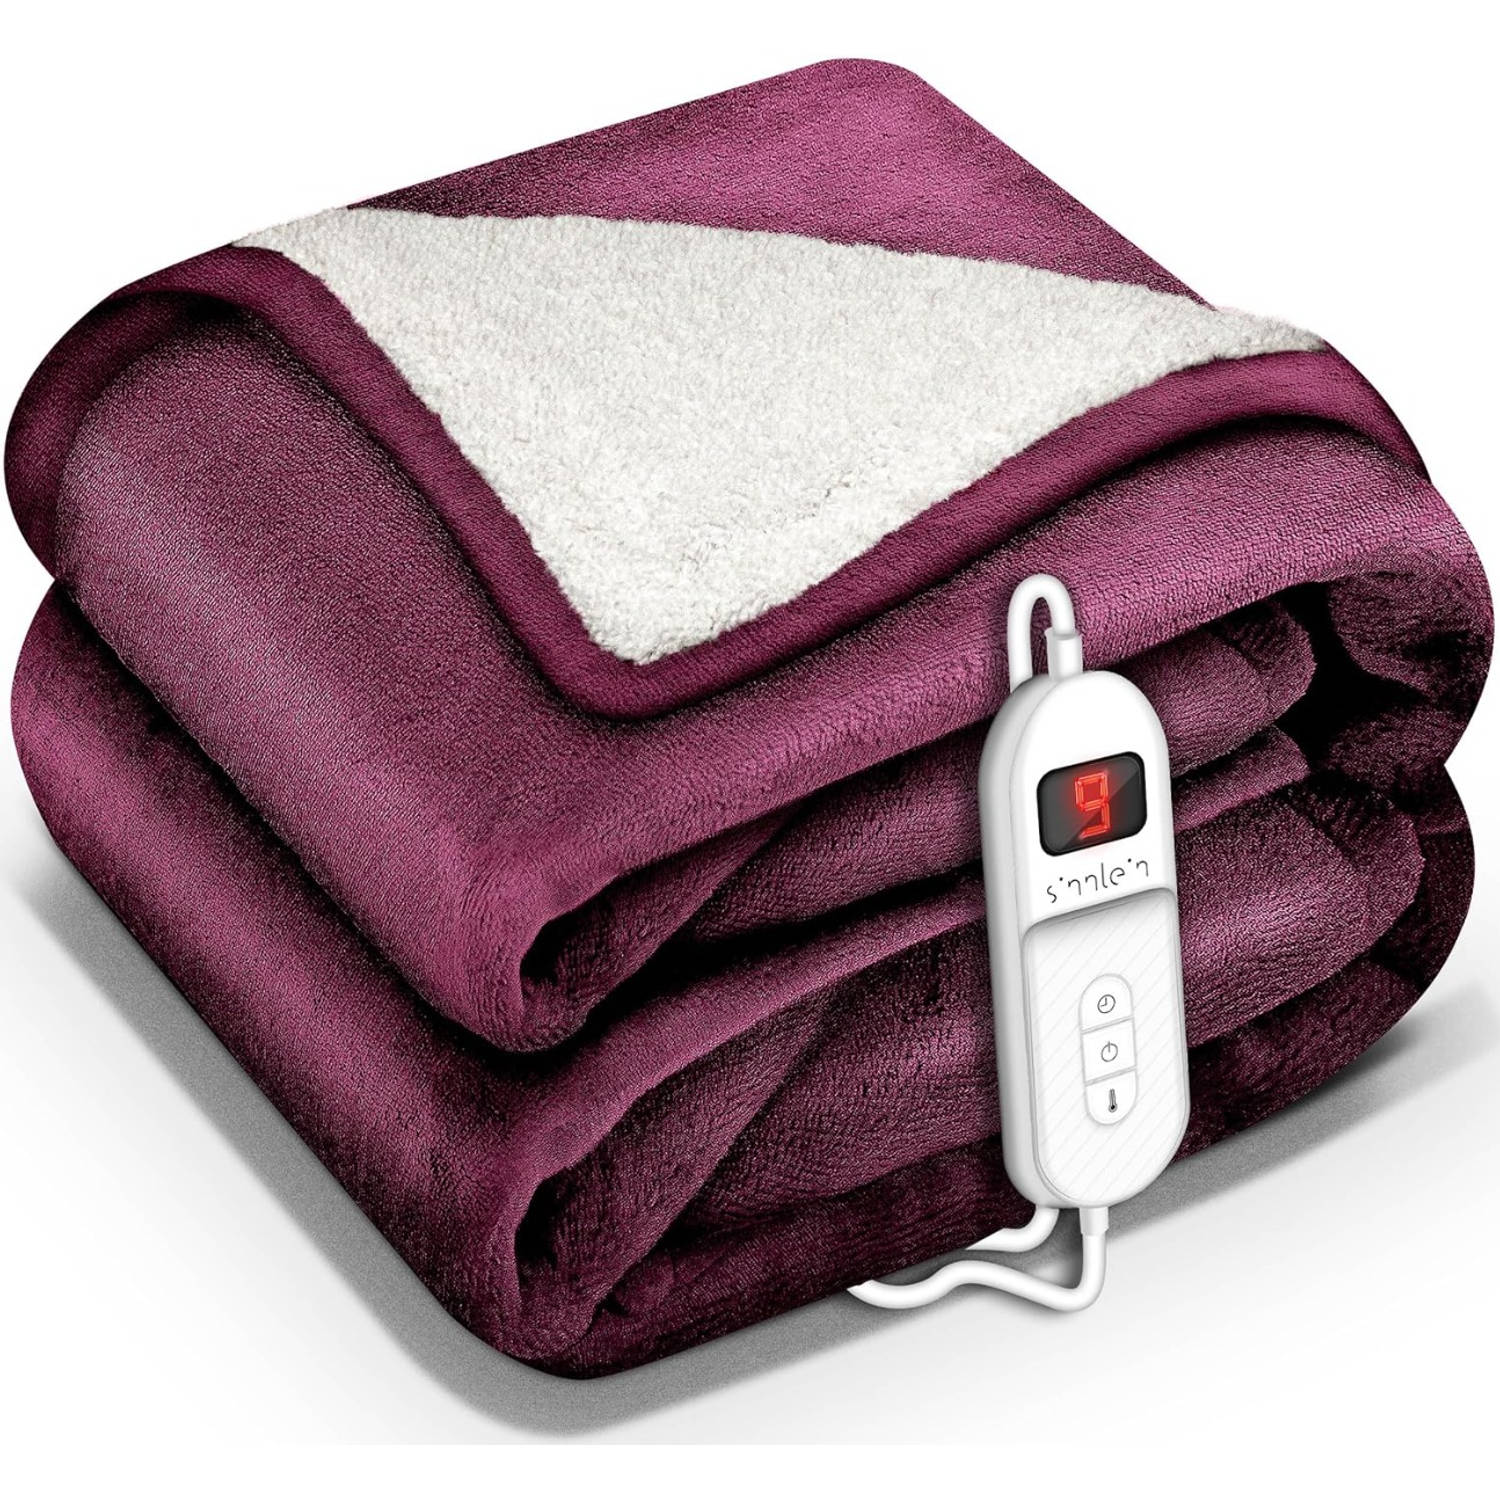 Sinnlein- Elektrische deken met automatische uitschakeling, rood, 180x130 cm, warmtedeken met 9 temp